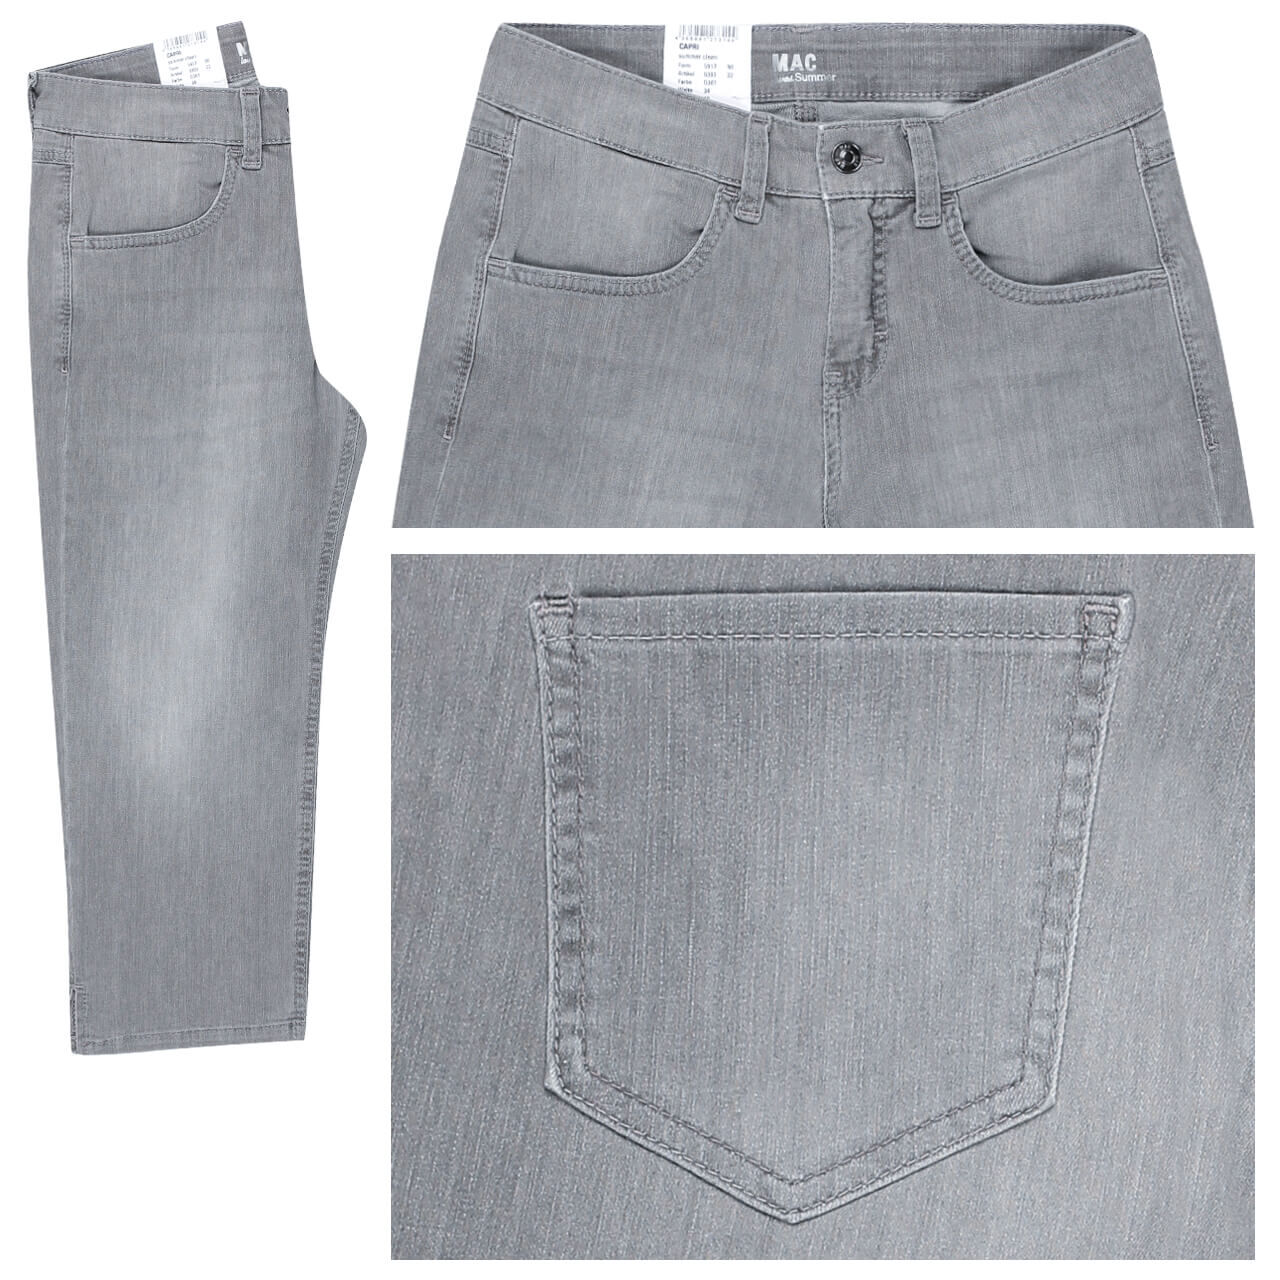 MAC Jeans Capri für Damen in Grau angewaschen, FarbNr.: D361